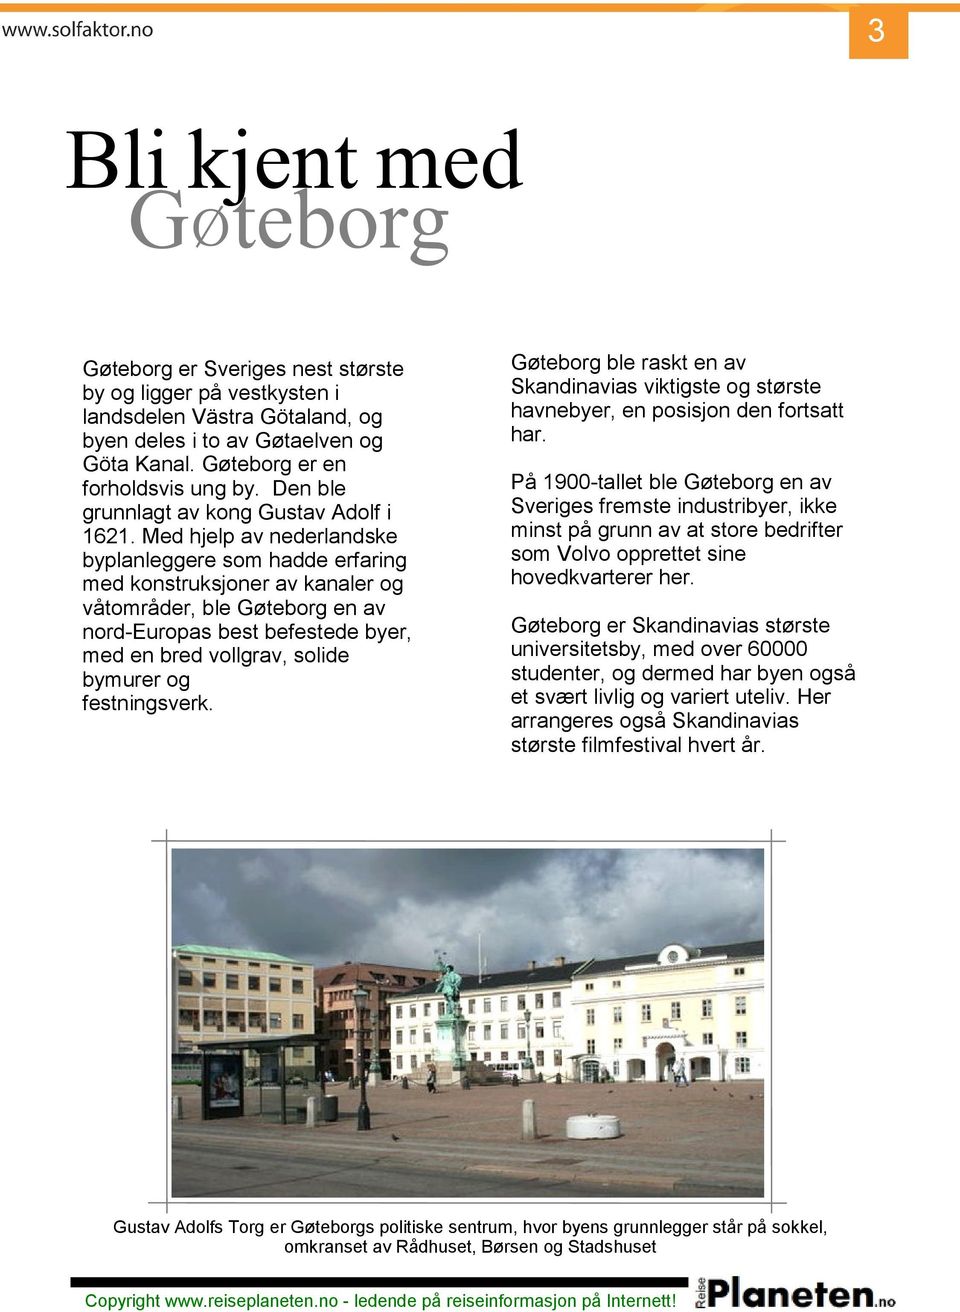 Med hjelp av nederlandske byplanleggere som hadde erfaring med konstruksjoner av kanaler og våtområder, ble Gøteborg en av nord-europas best befestede byer, med en bred vollgrav, solide bymurer og